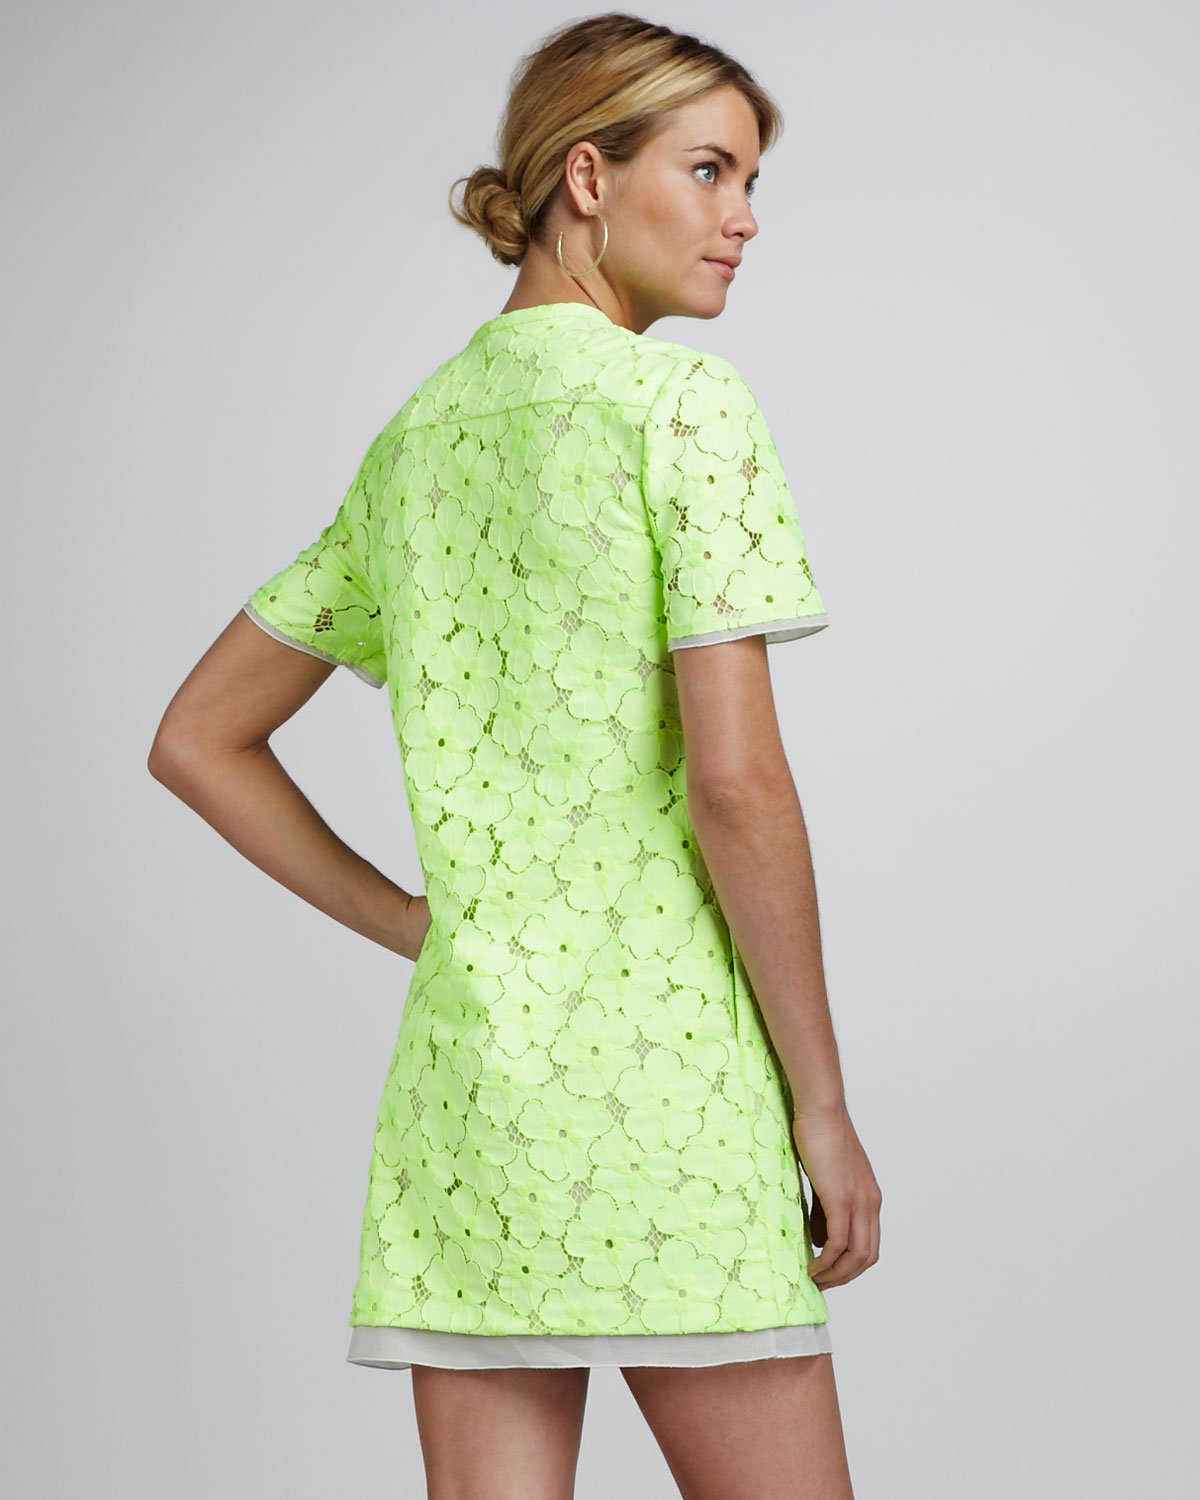 Diane von Furstenberg Green Warner Flower Lace Dress ( Size 4) | eBay